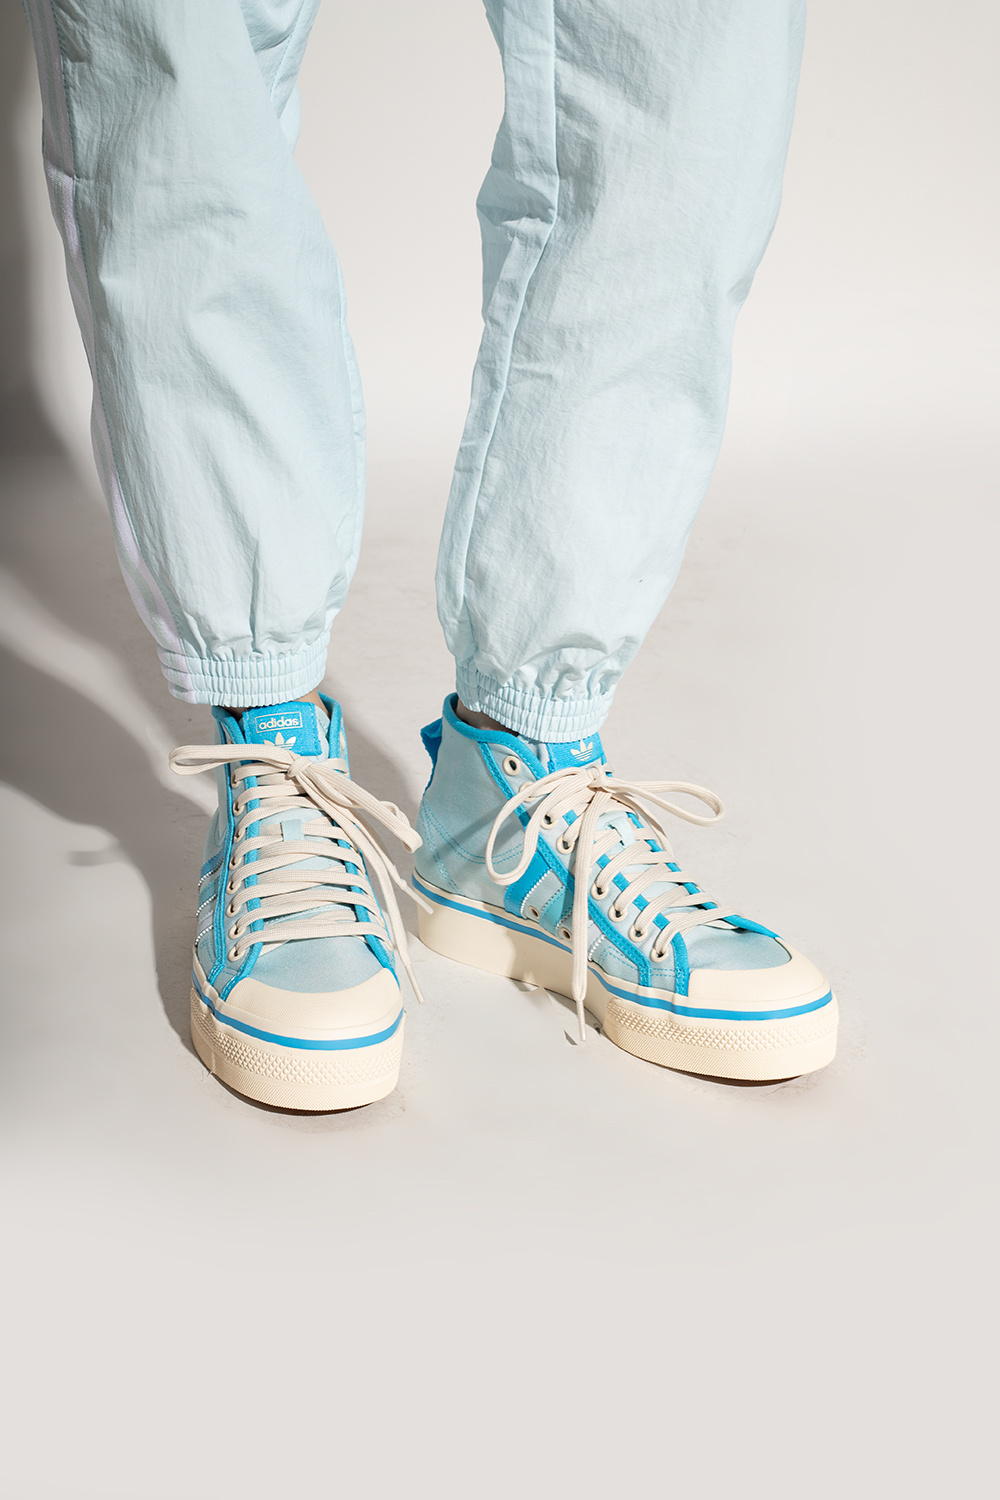 Light blue 'Nizza' platform sneakers ADIDAS Originals - Vitkac Italy